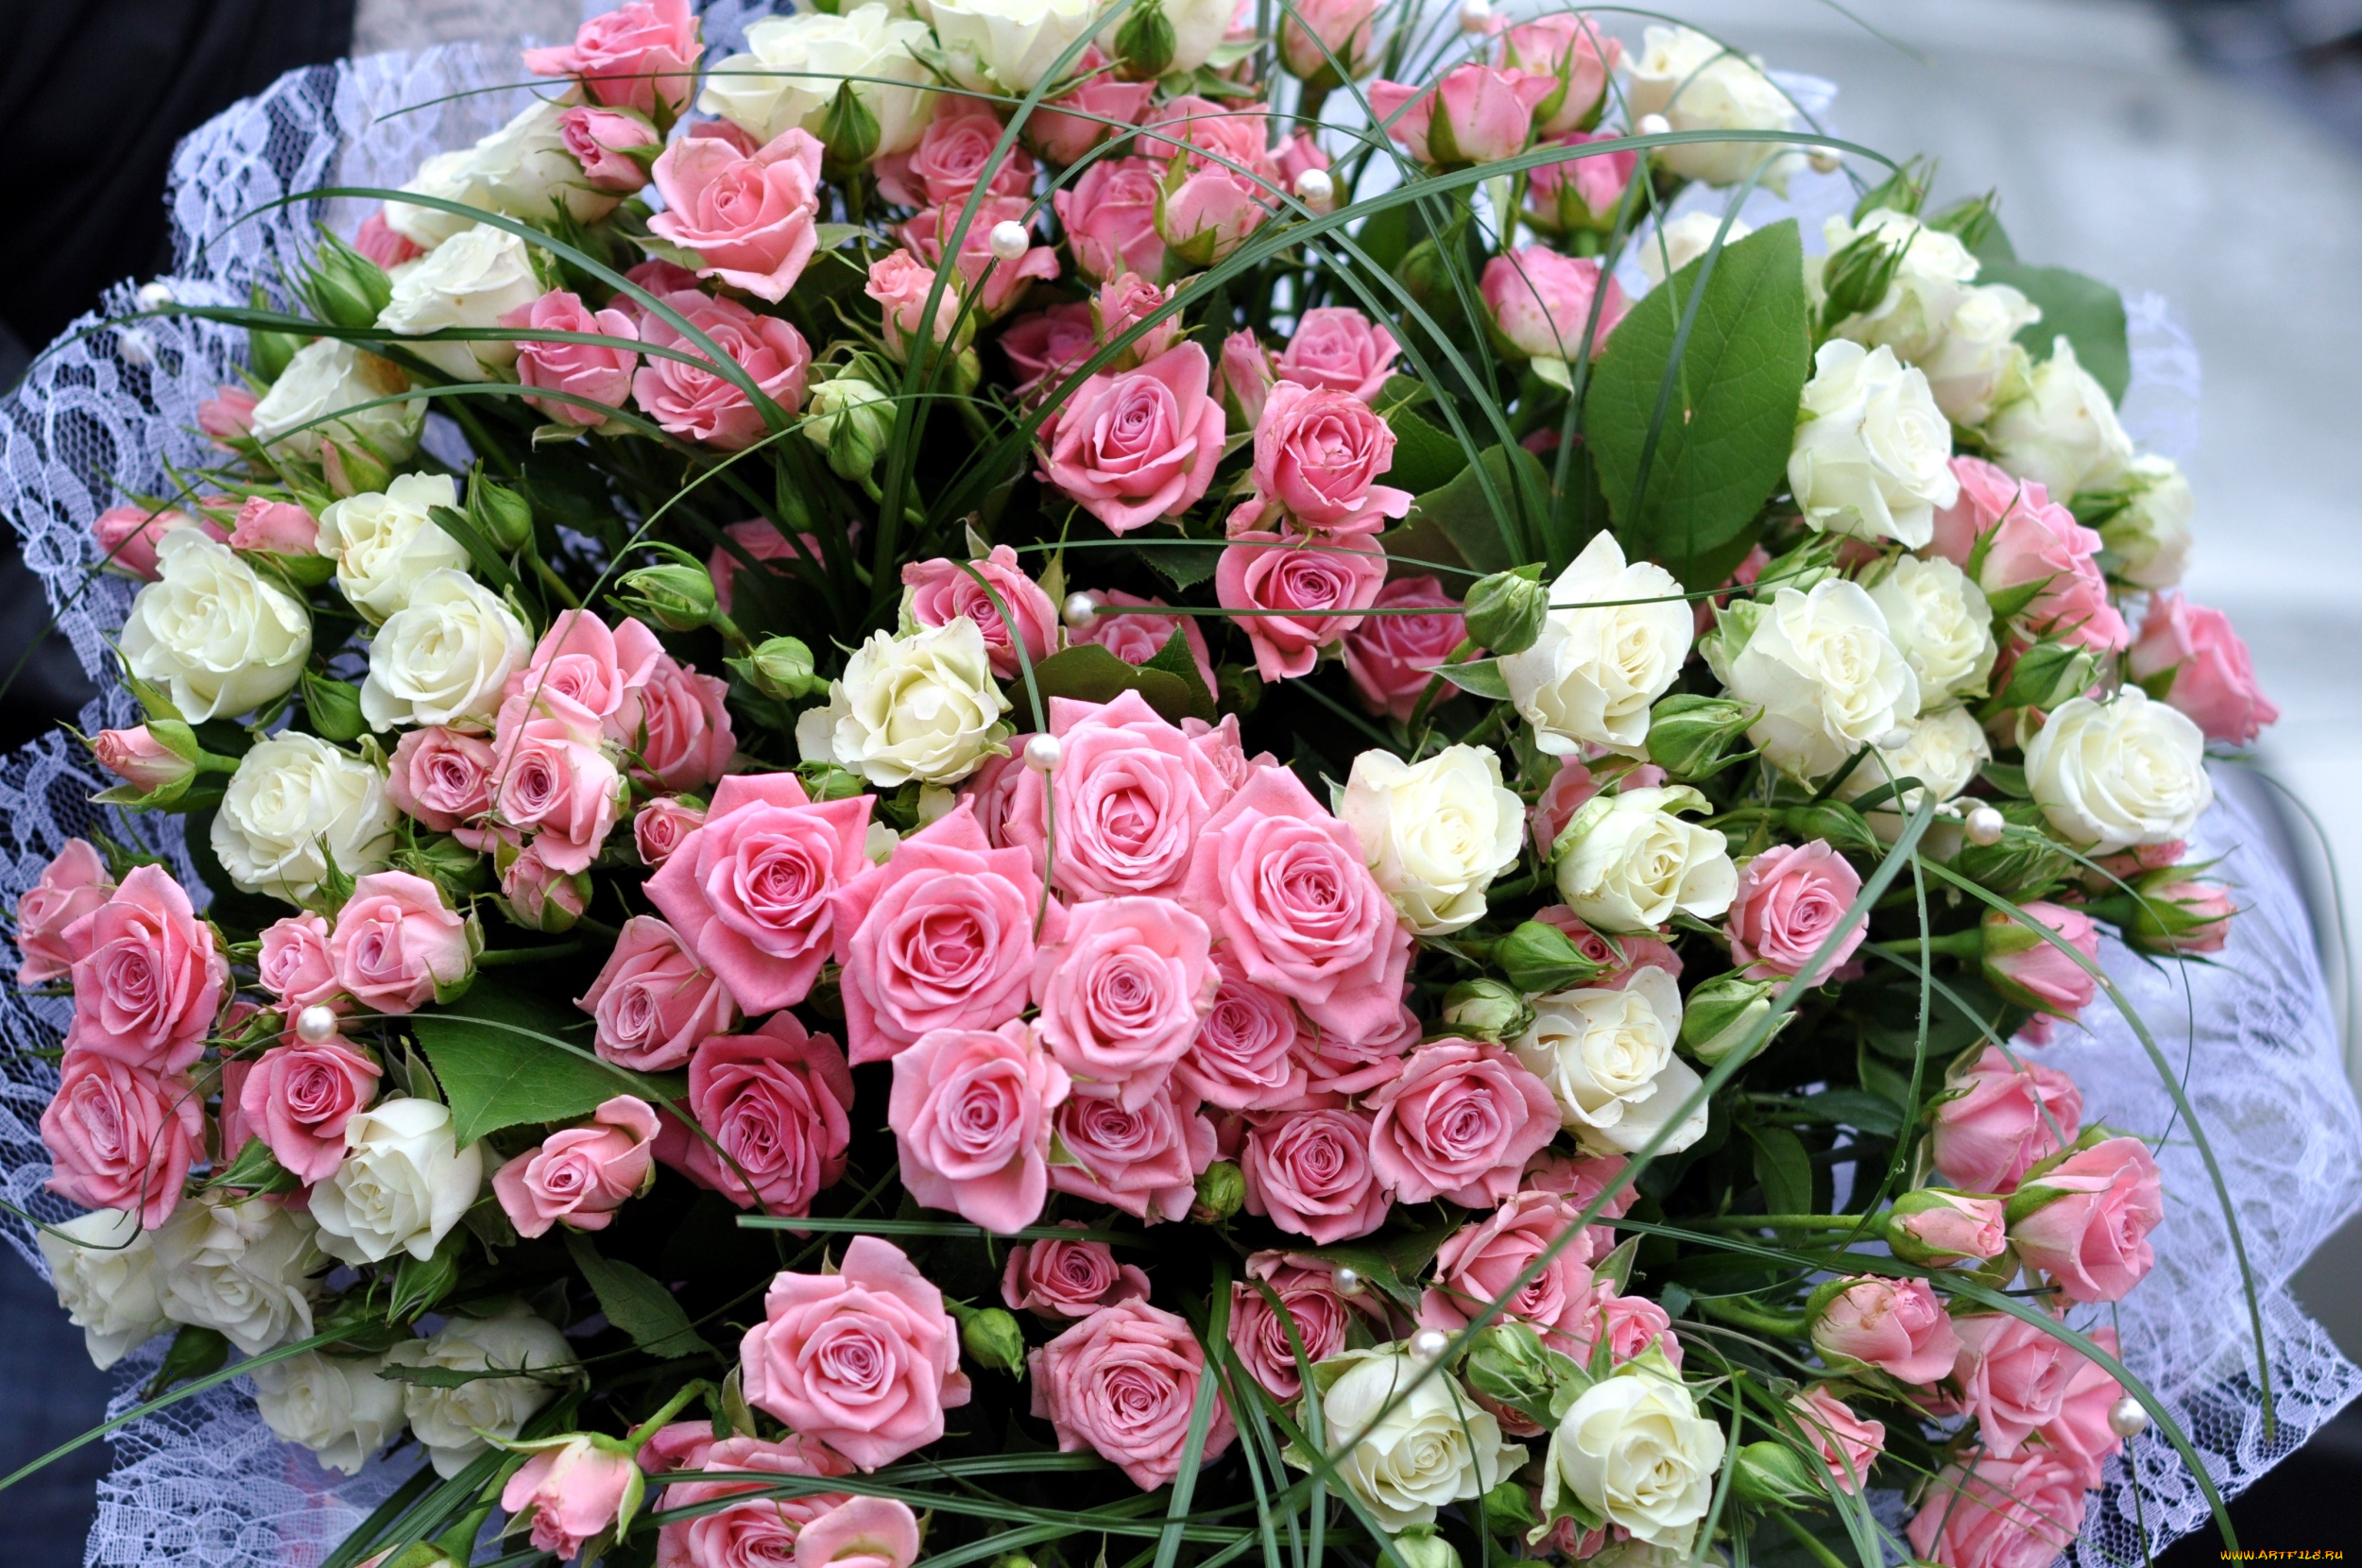 Цвет с днем рождения фото. Красивый букет роз. Букет цветов «день рождение». Огромный красивый букет цветов. Роскошный букет с днем рождения.